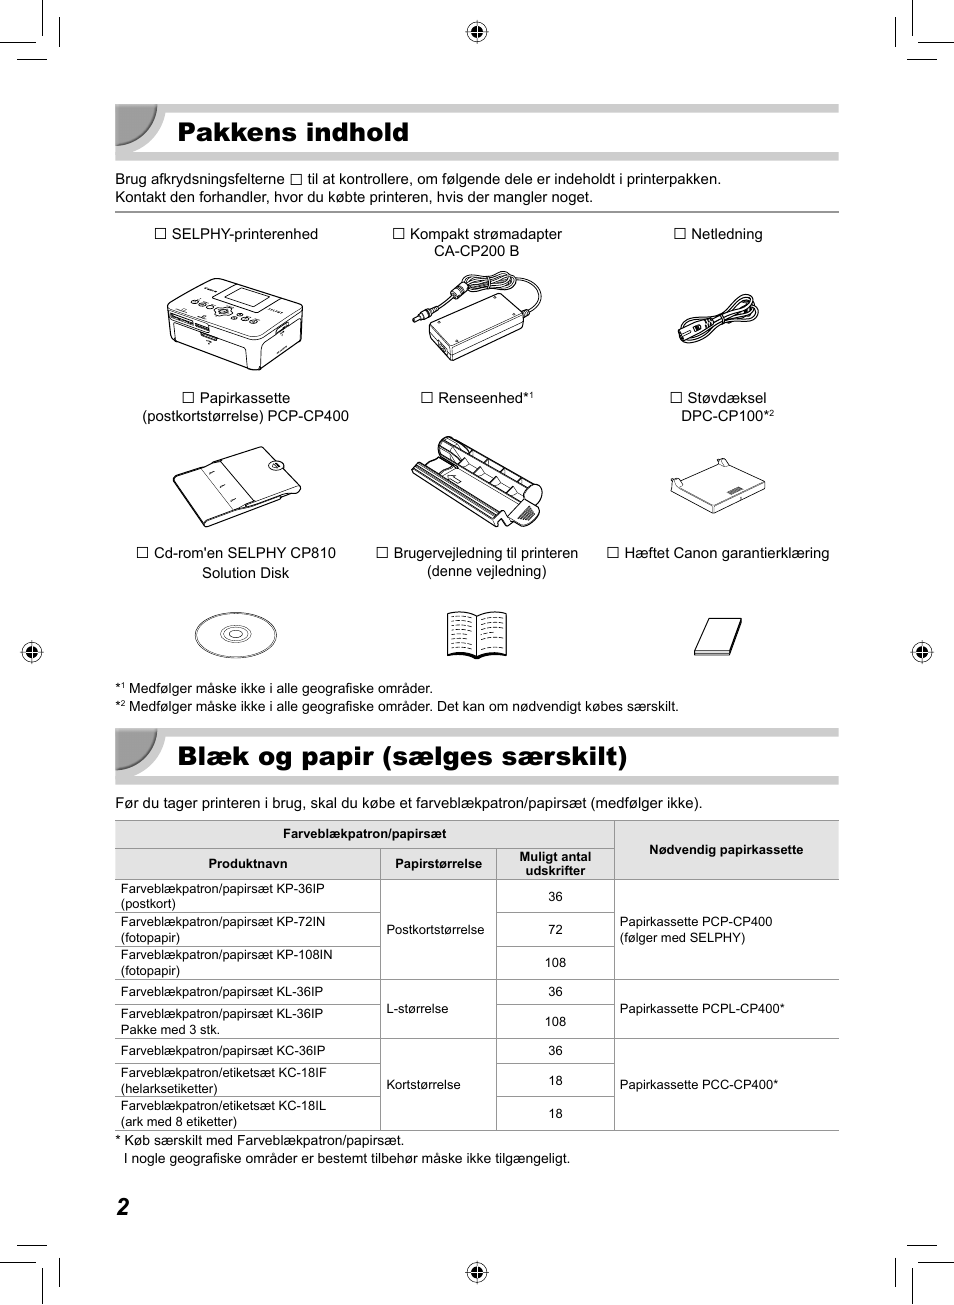 Pakkens indhold, Blæk og papir (sælges særskilt) | Canon SELPHY CP810 User Manual | Page 42 / 360